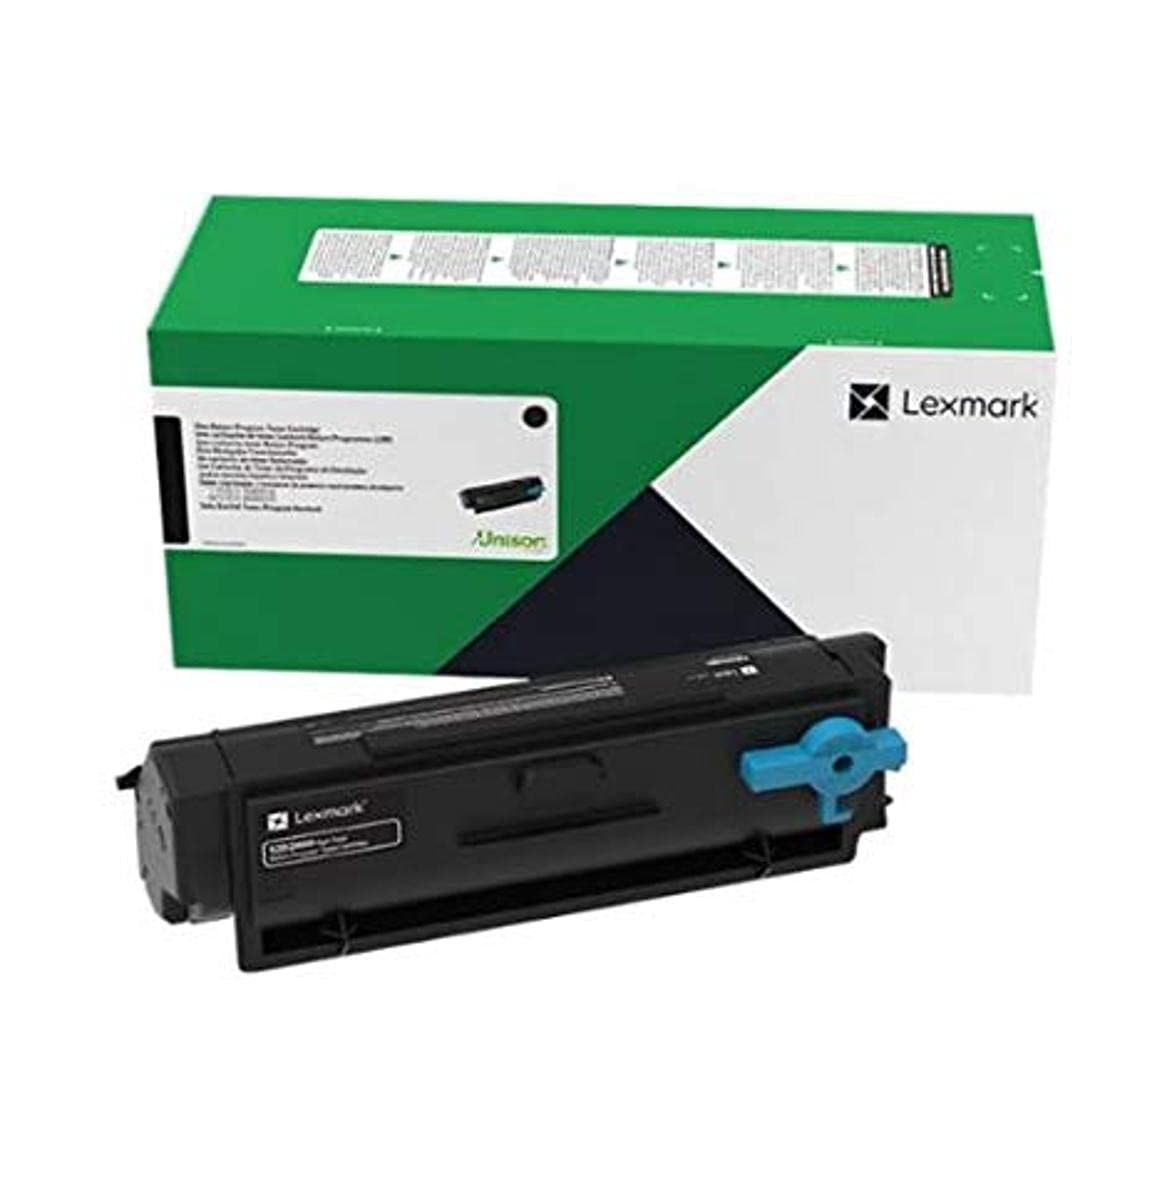 Lexmark - Black - Original - Toner Cartridge LRP MS321, MS331, MS421, MS431, MS521, MS621, MX331, MX421, MX431, MX521